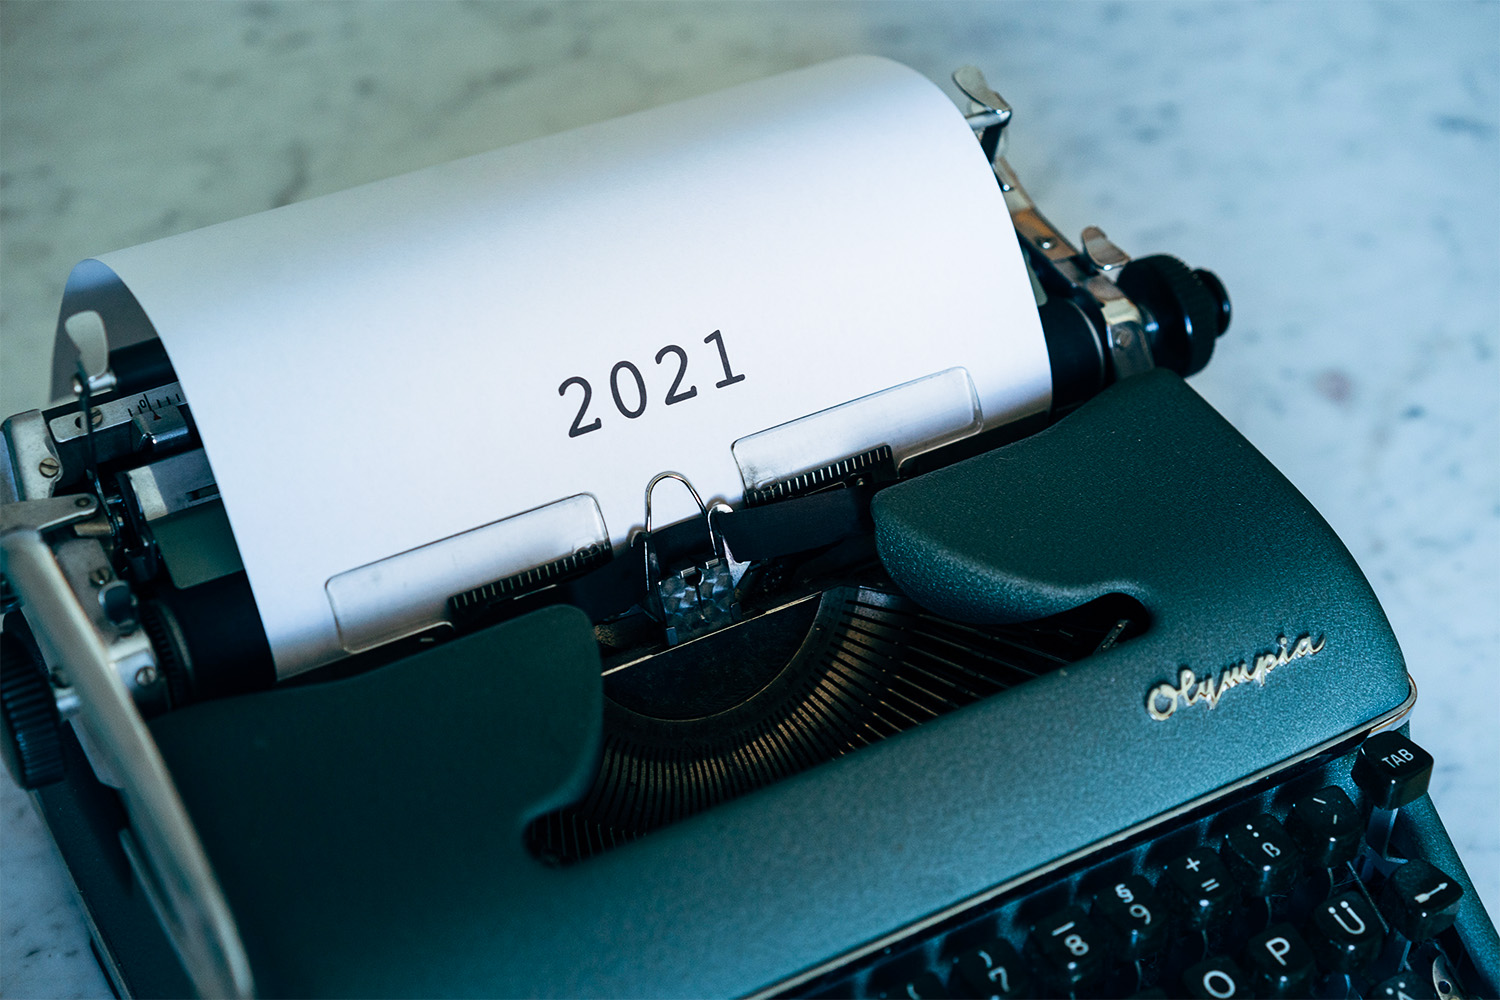 Schreibmaschine mit der gedruckten Jahreszahl "2021"